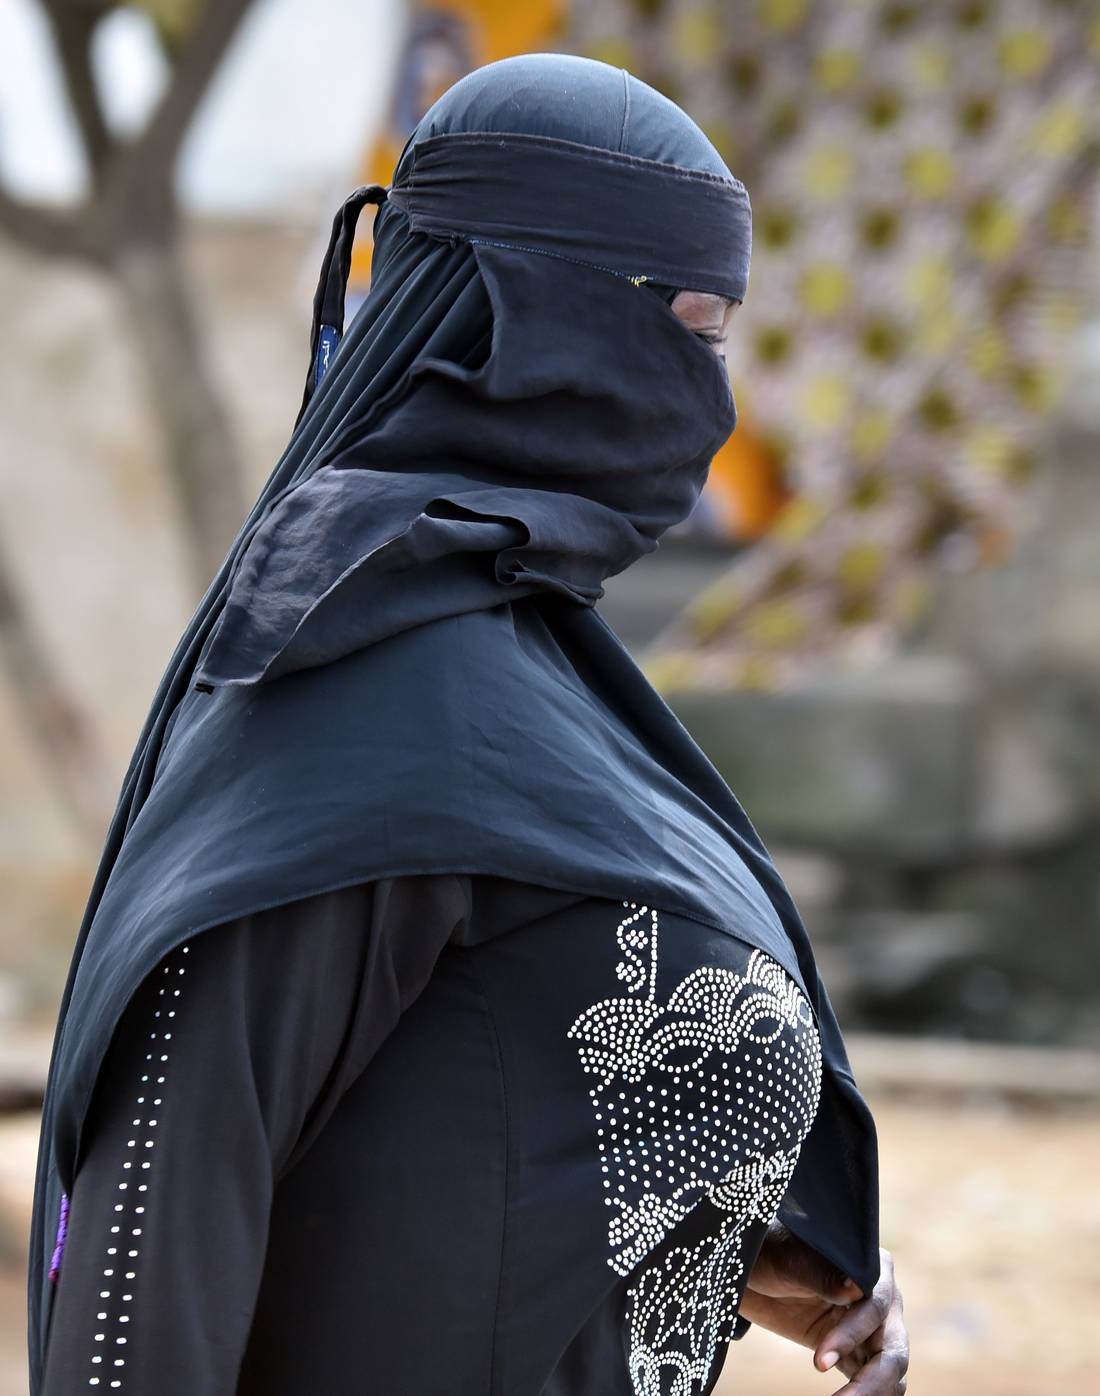 إلقاء القبض على  أم الزهراء .. الفرنسية التي تزوّج مقاتلي  داعش  من أوروبيات - CNNArabic.com